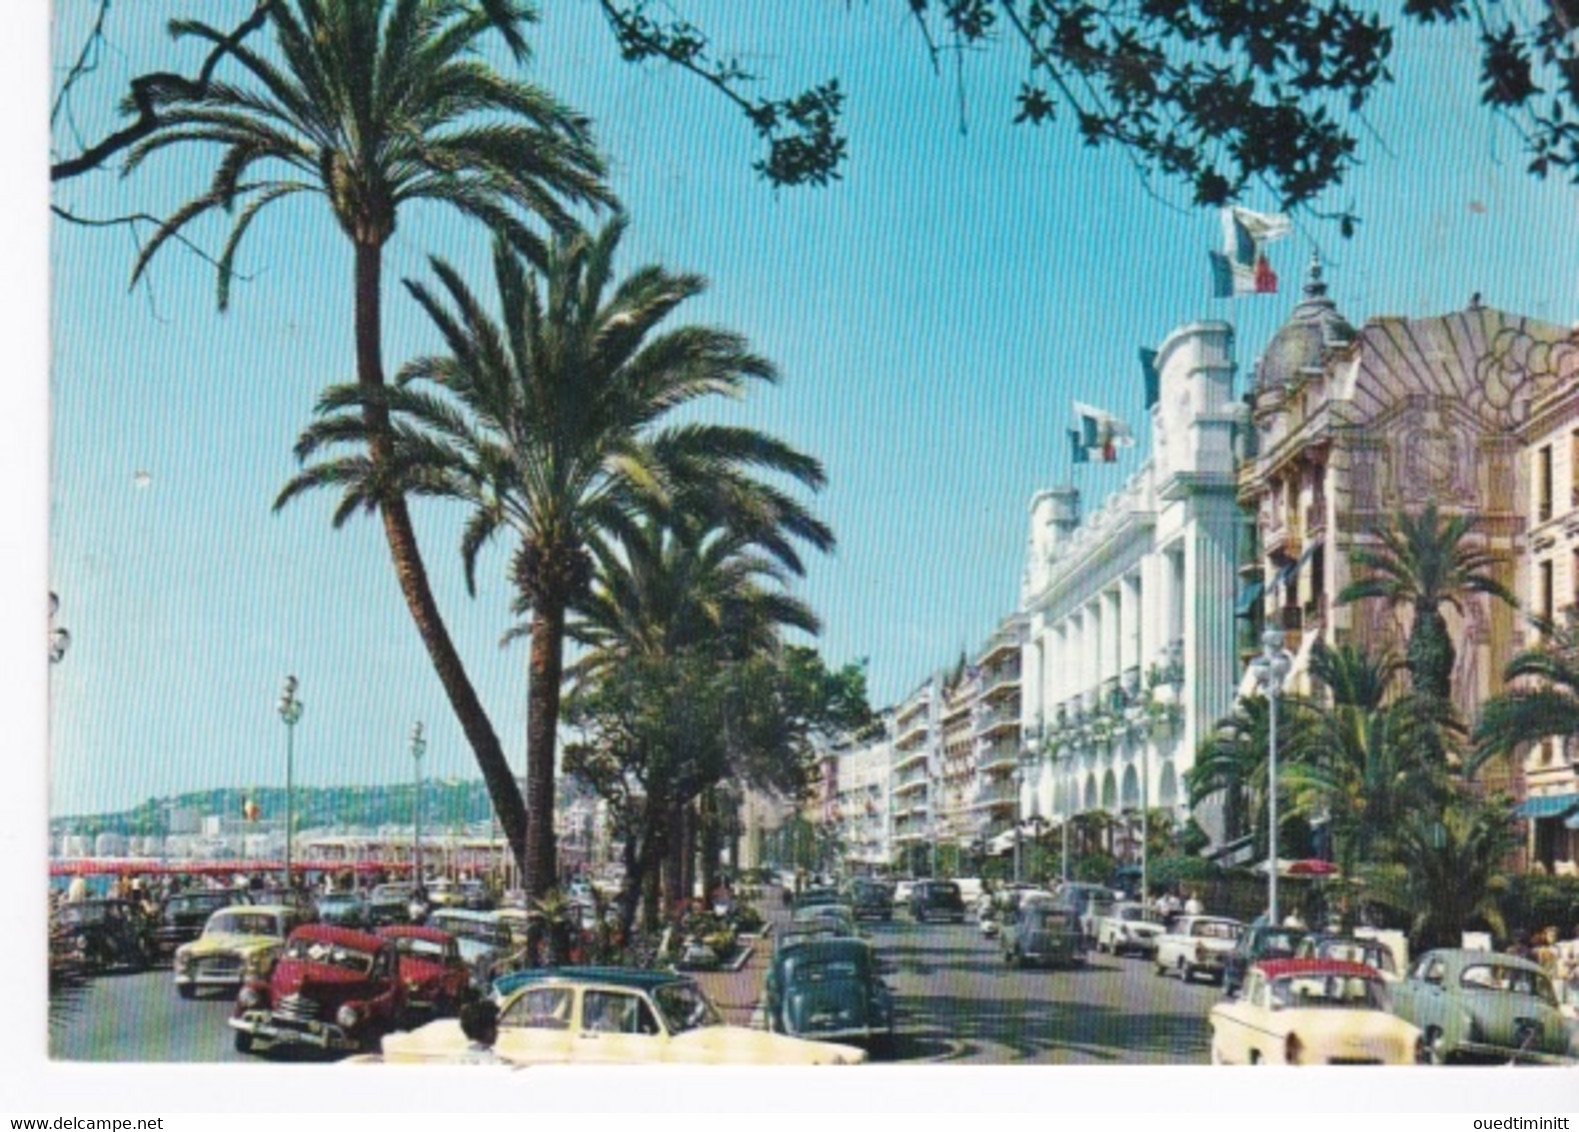 CPSM GF Nice Promenade Des Anglais Simca Aronde, Citroen, Peugeot 403 Etc... - Voitures De Tourisme